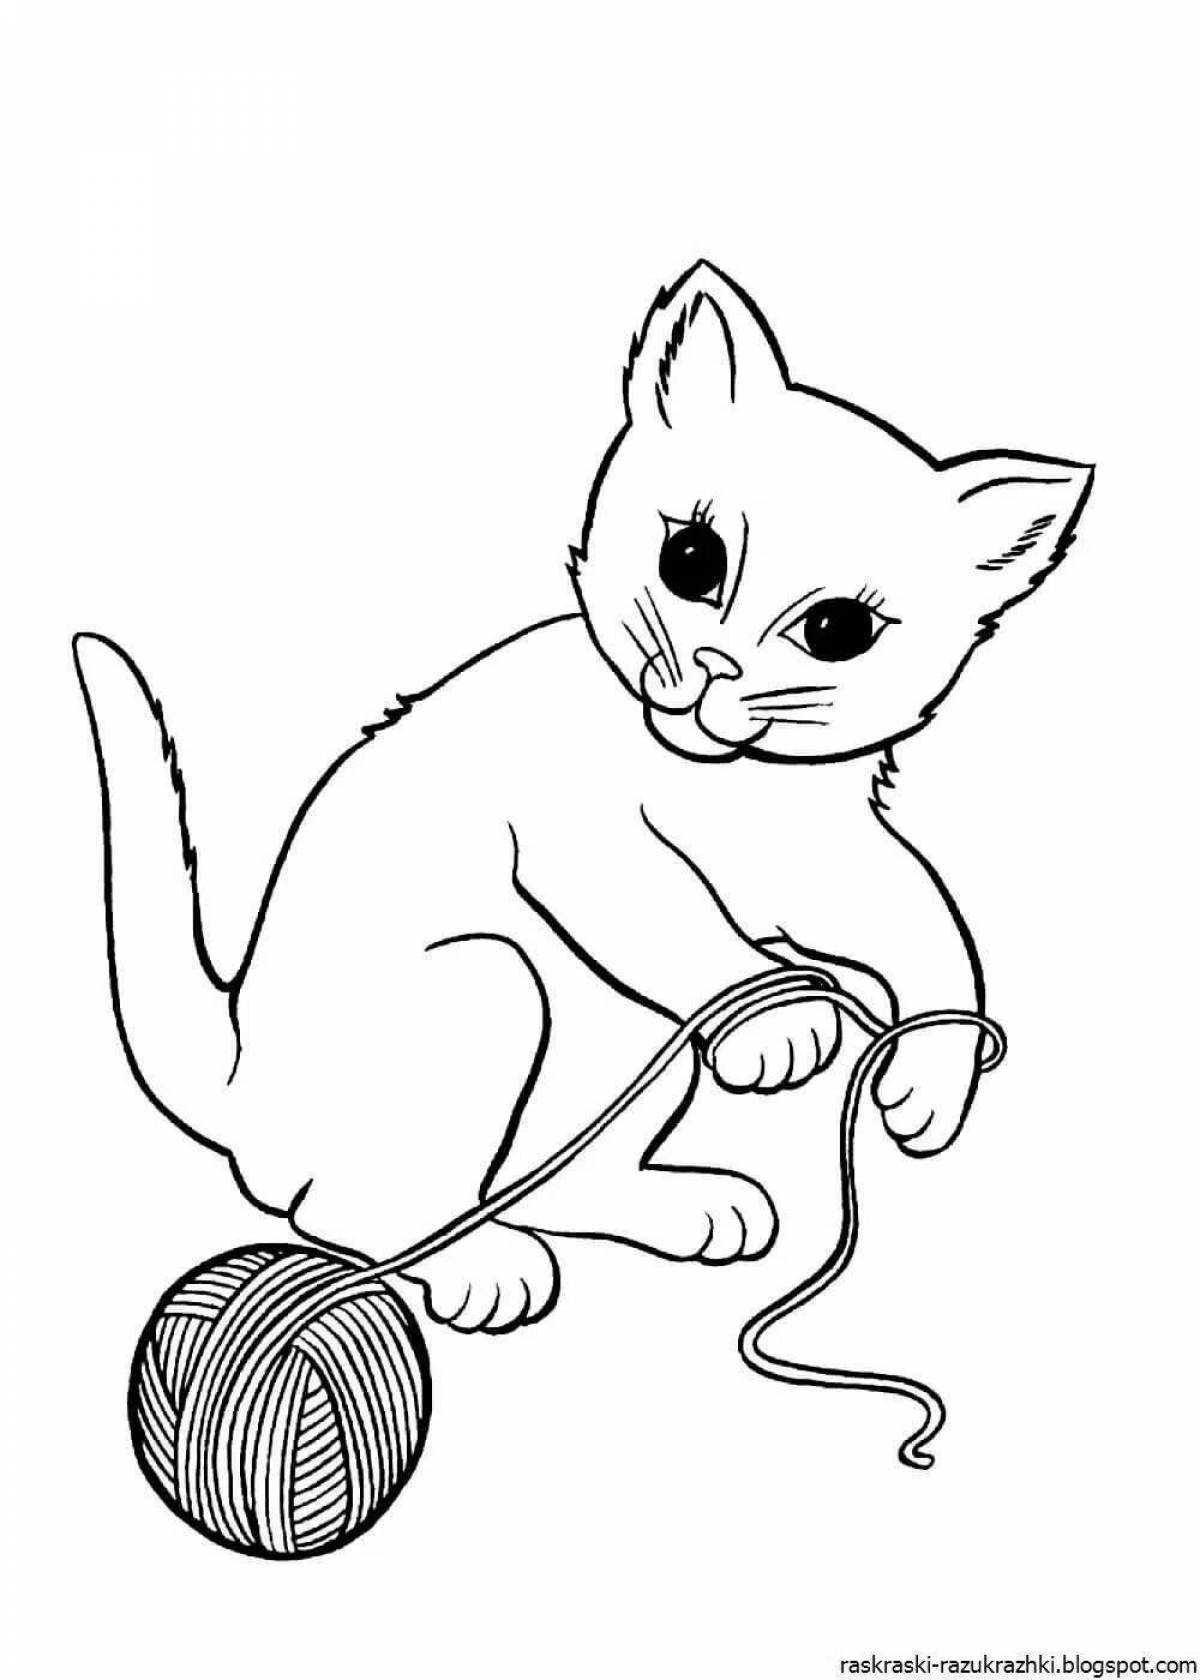 Увлекательный рисунок котенка для детей